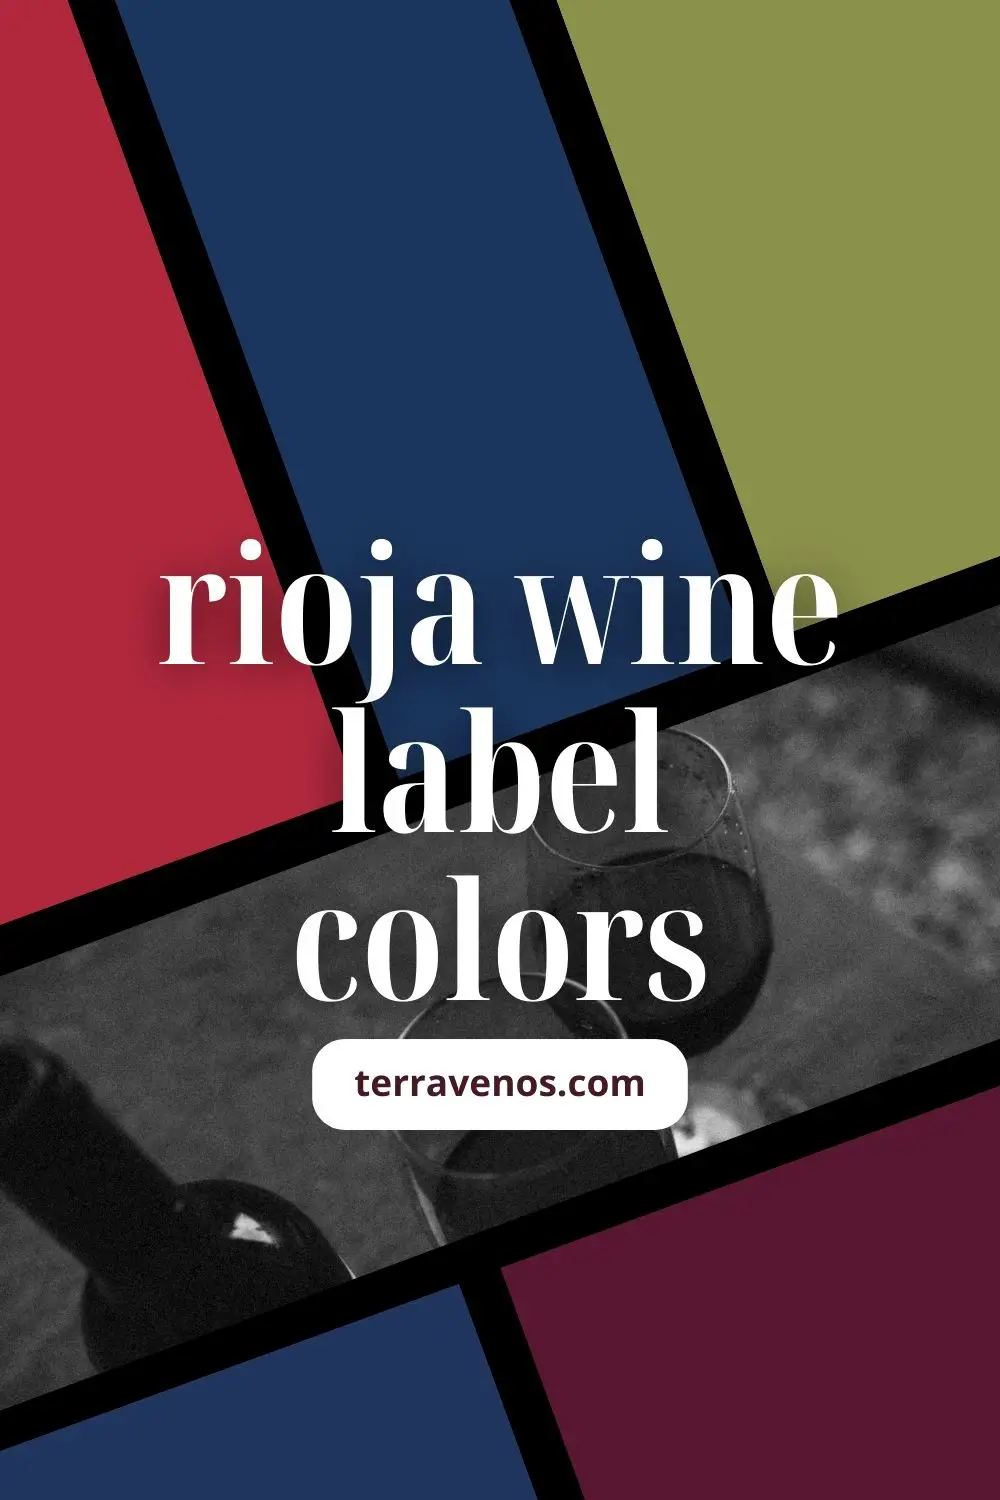 rioja-wine-label-colors